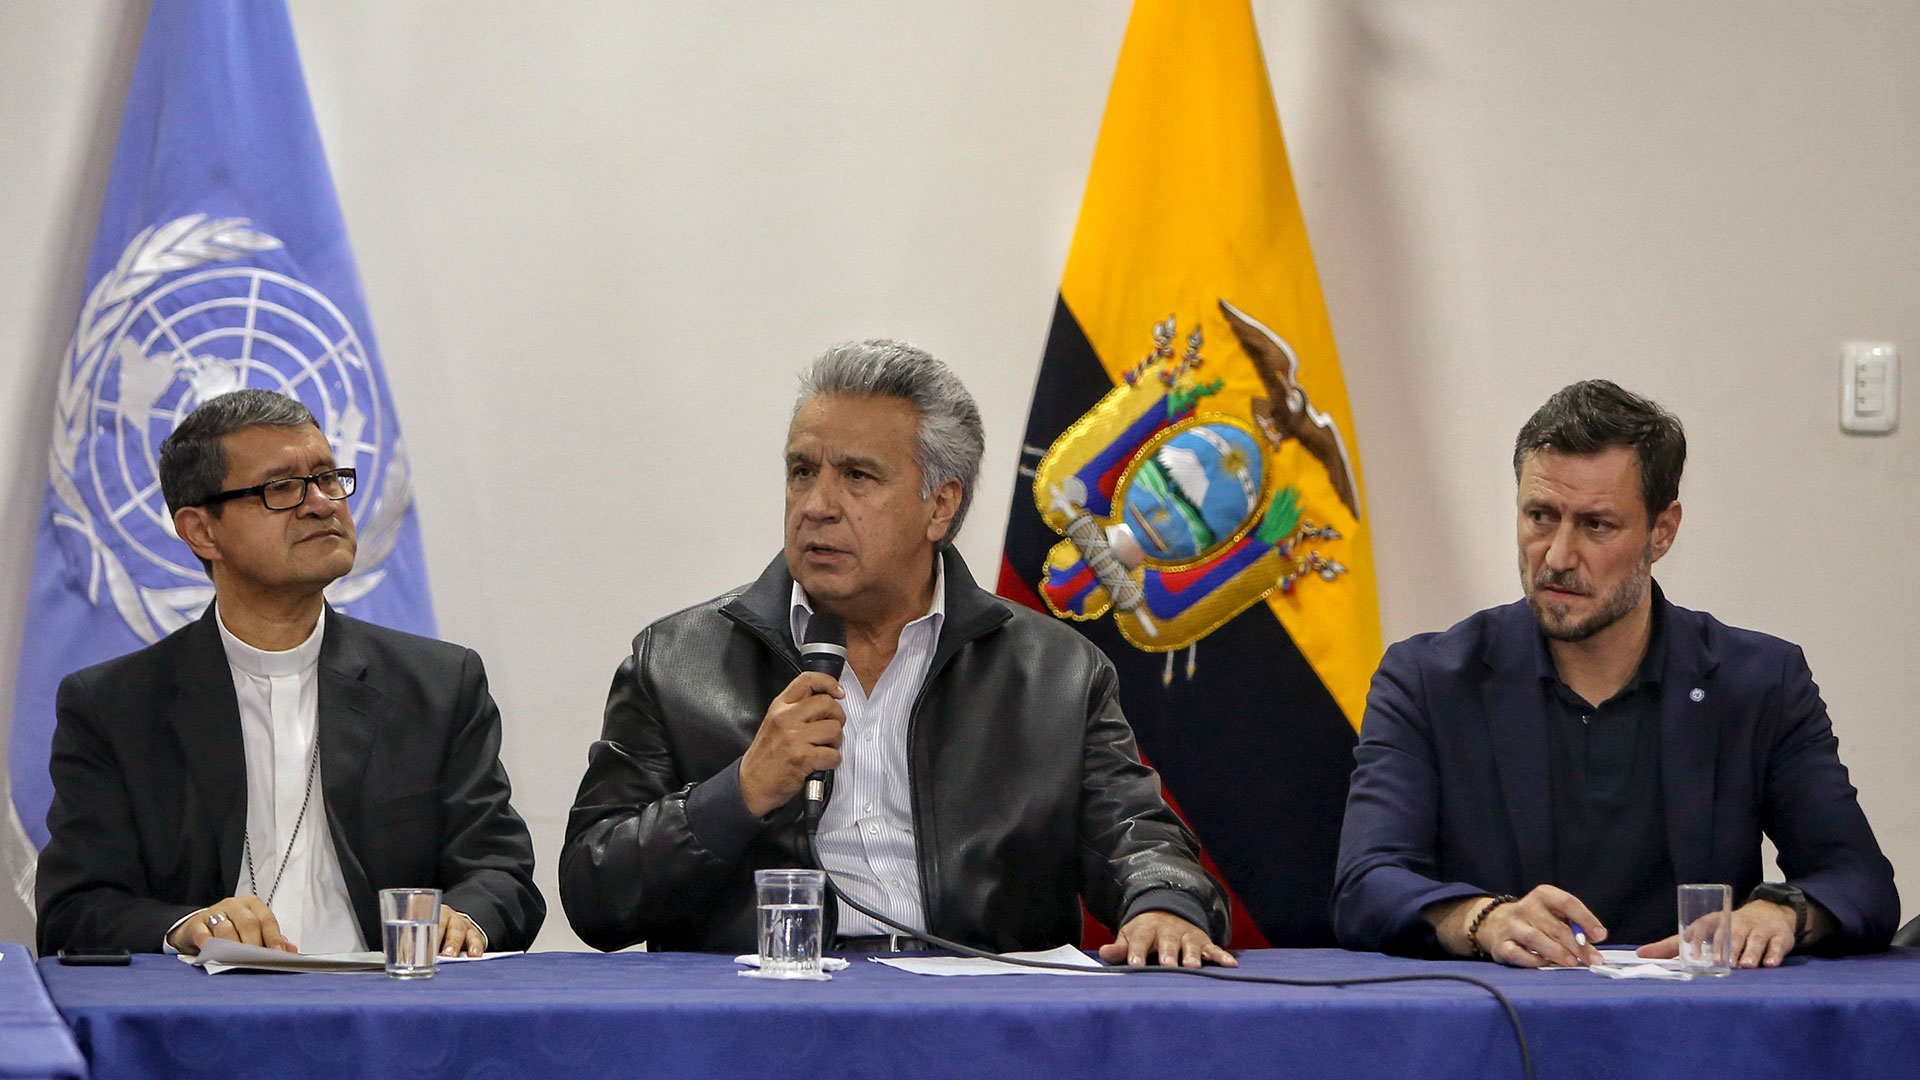 Lenín Moreno repeals controversial decree to grant pardons in Ecuador